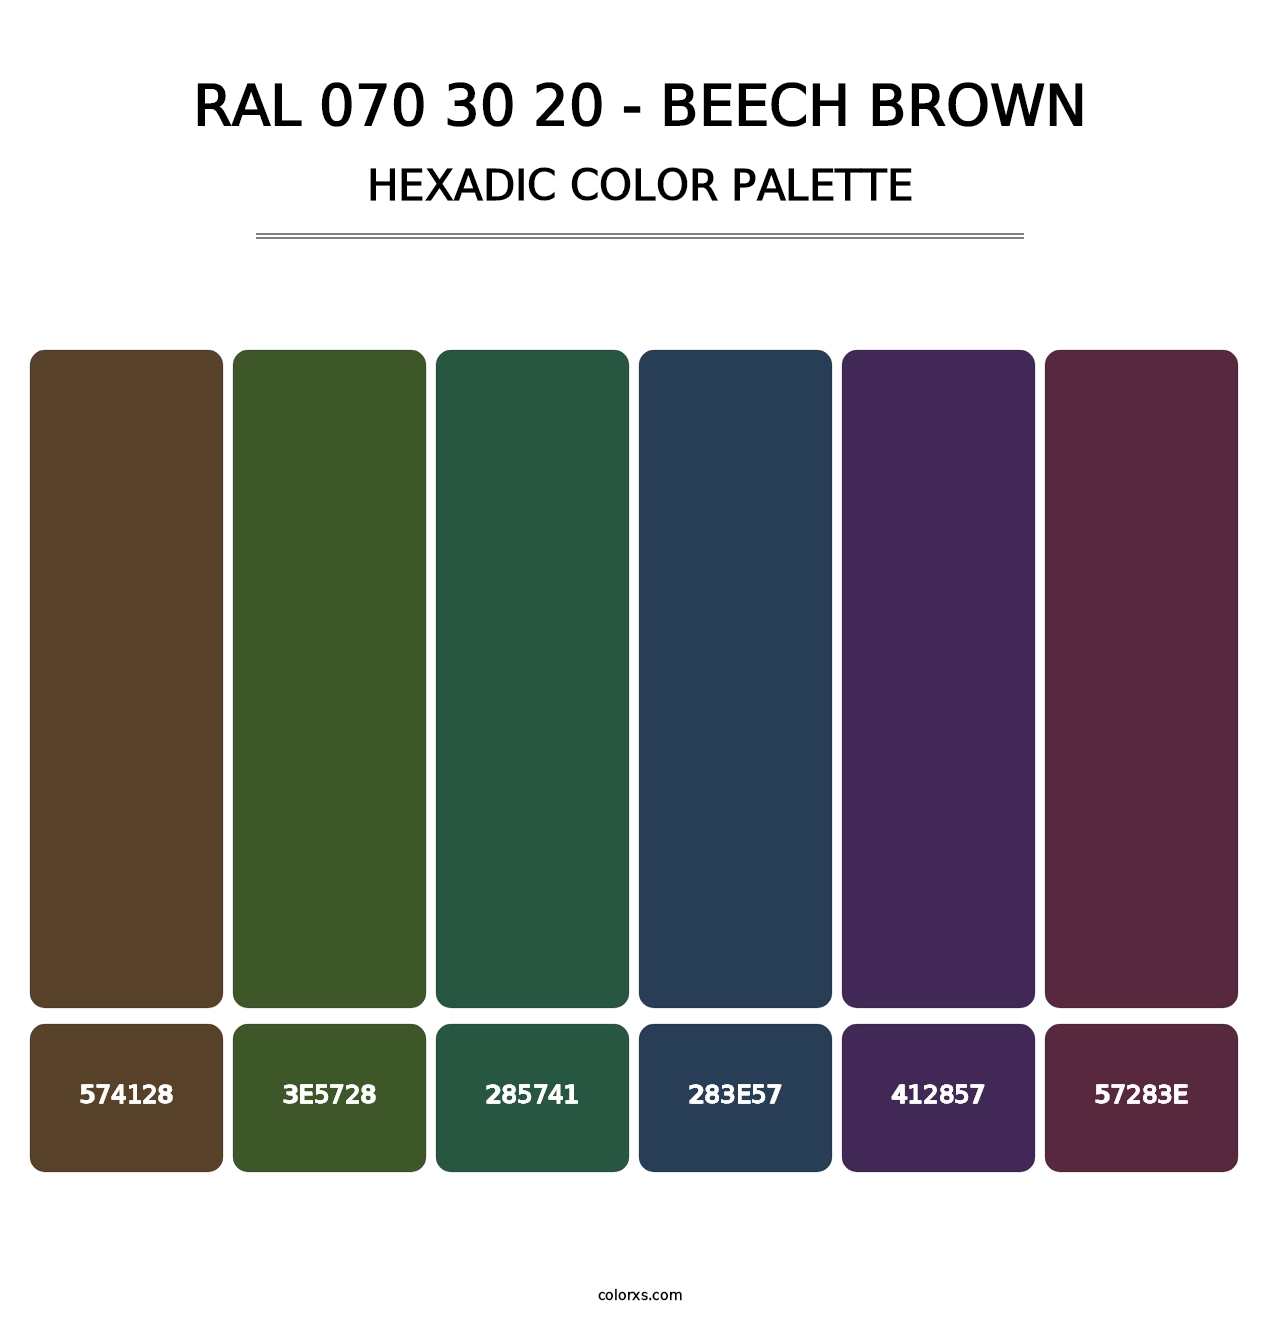 RAL 070 30 20 - Beech Brown - Hexadic Color Palette